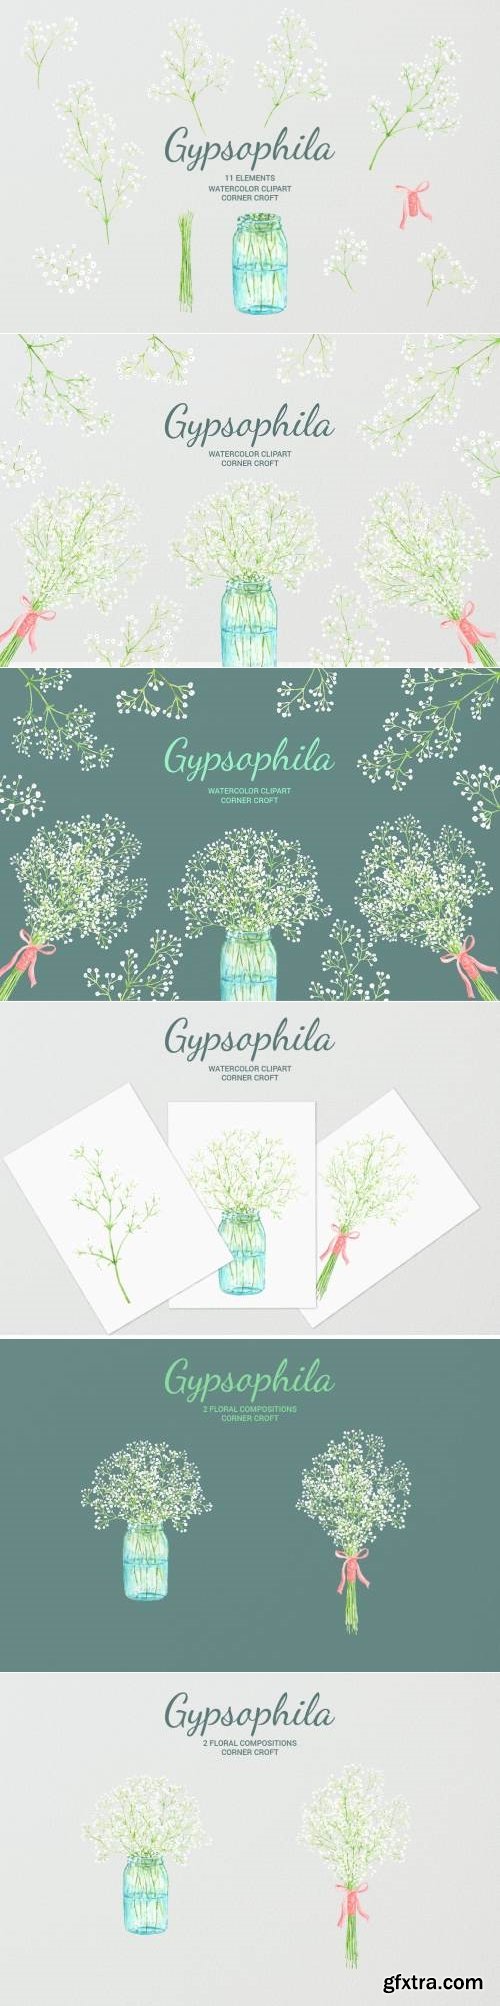 Watercolor Gypsophila Baby\'s-breath Illustration